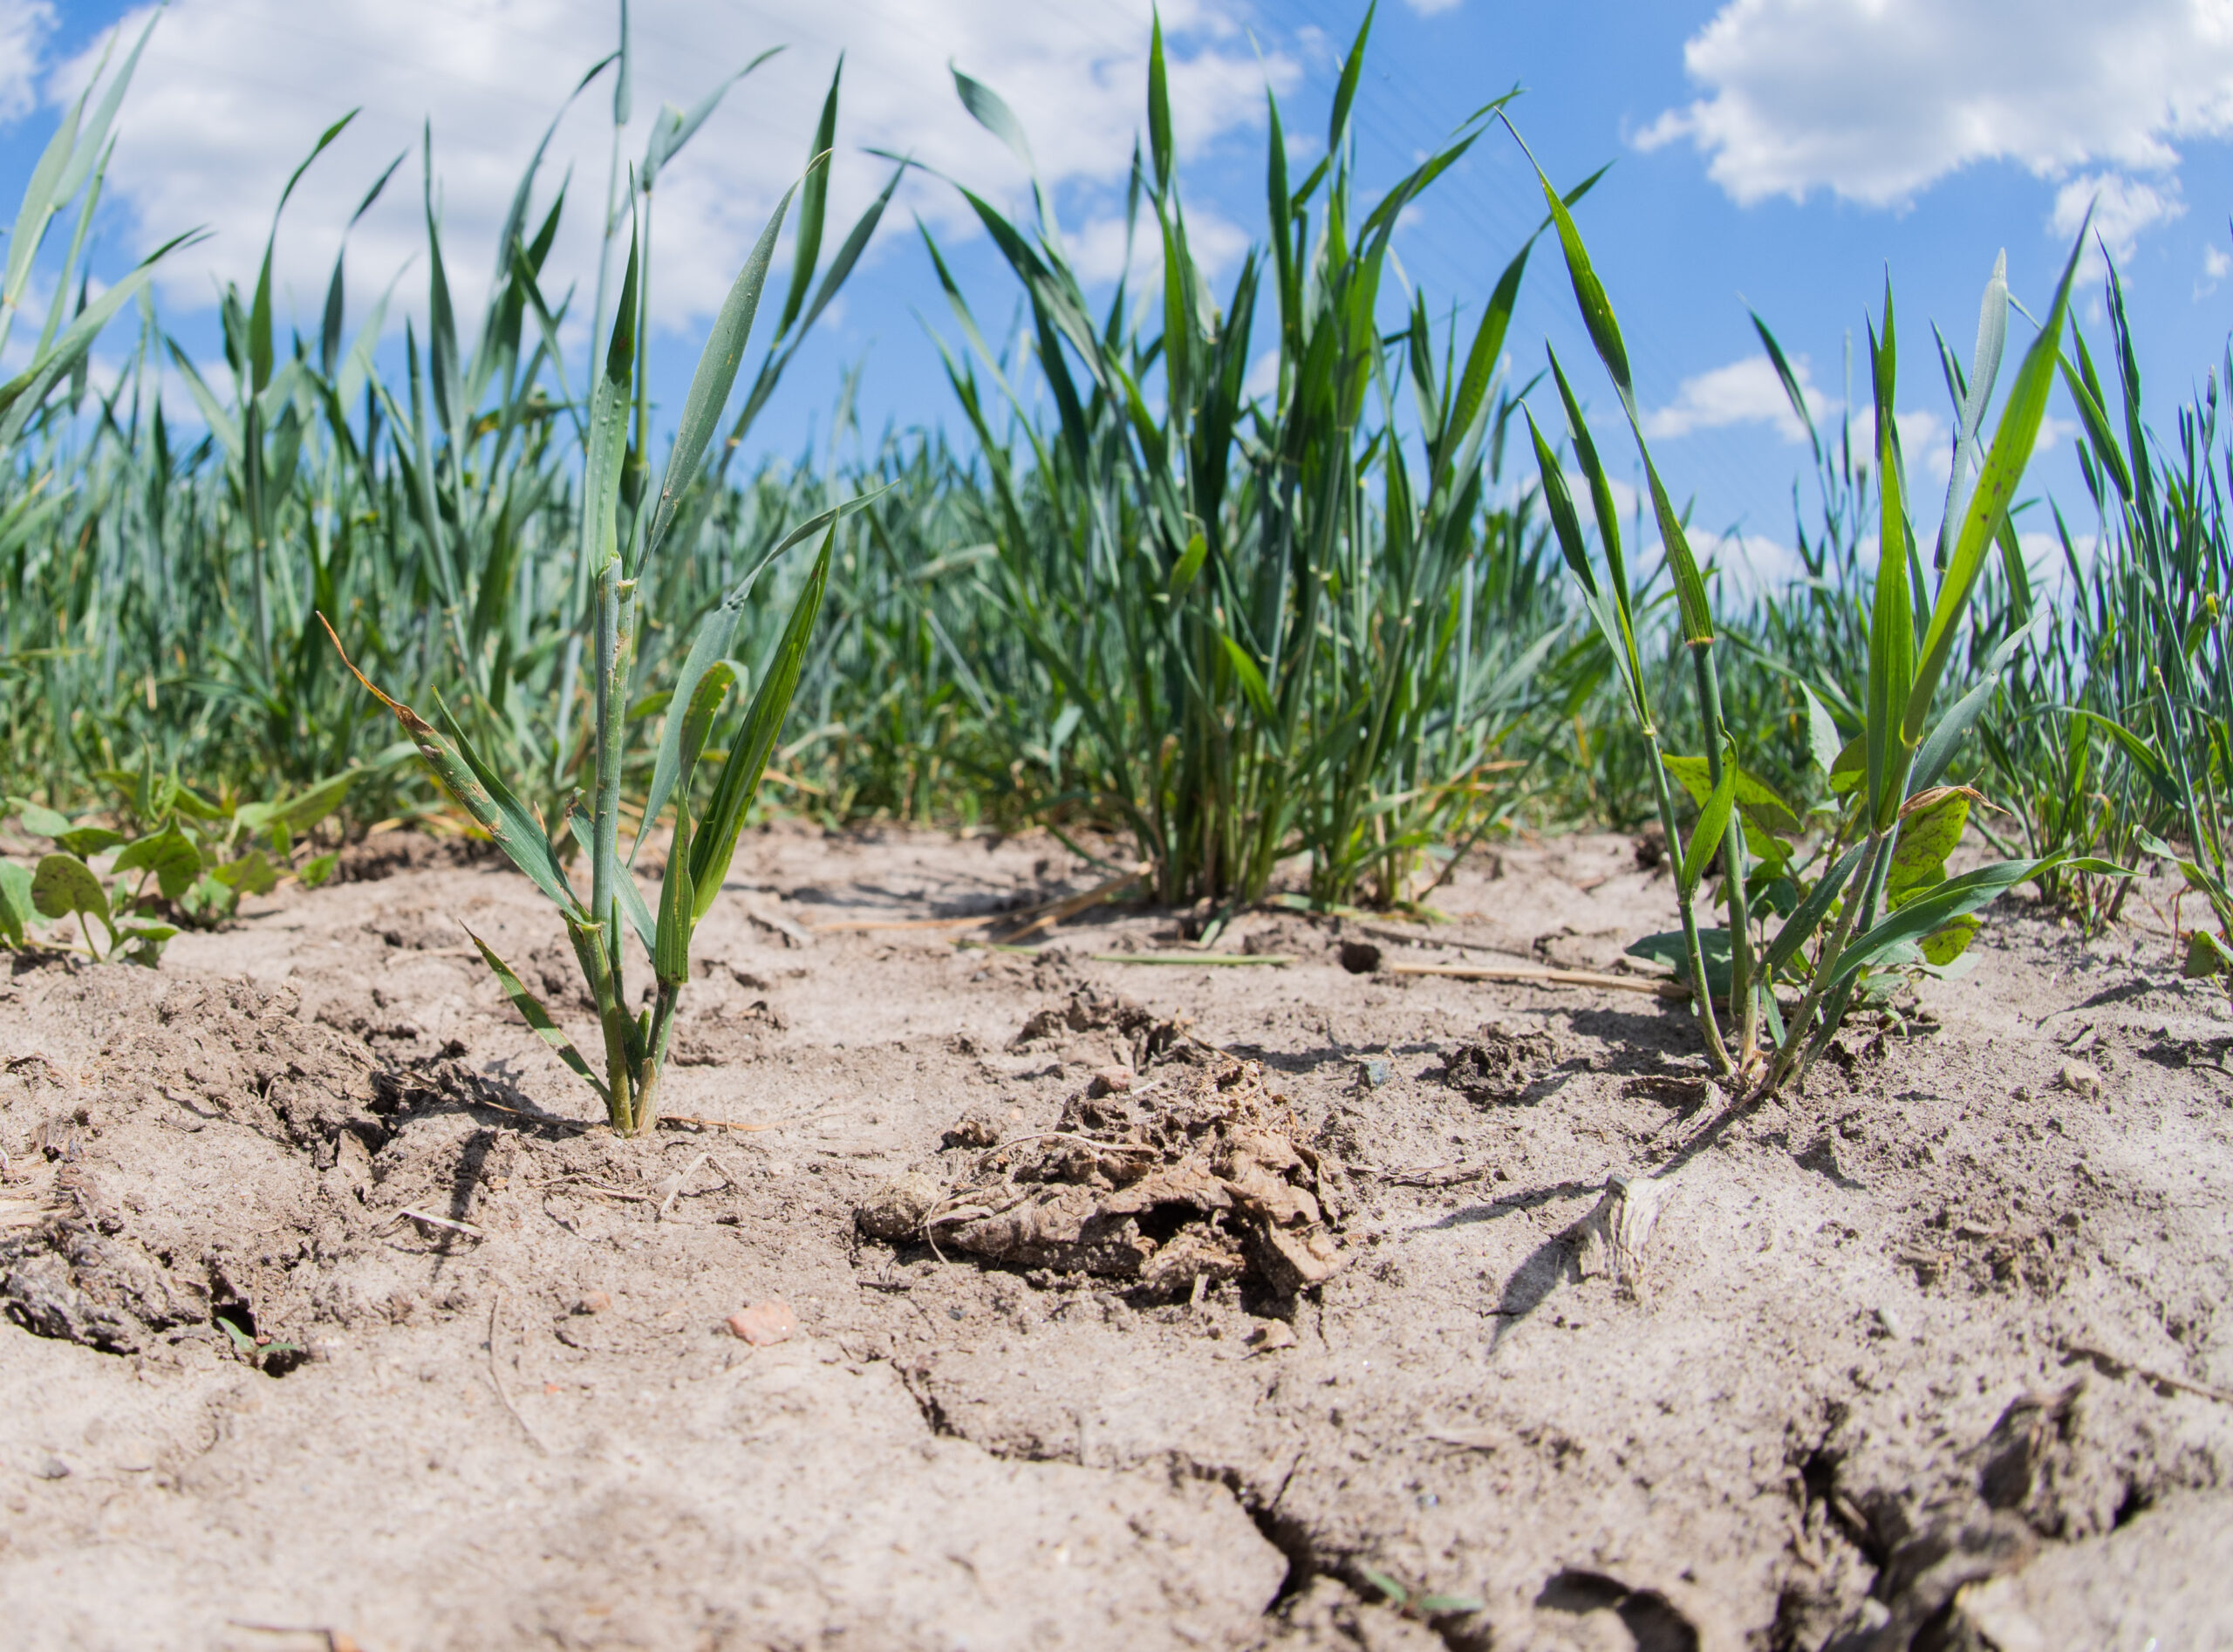 Niedersachsens Landwirte befürchten, dass sich die anhaltende Trockenheit negativ auf die Ernte auswirkt. (Symbolbild)